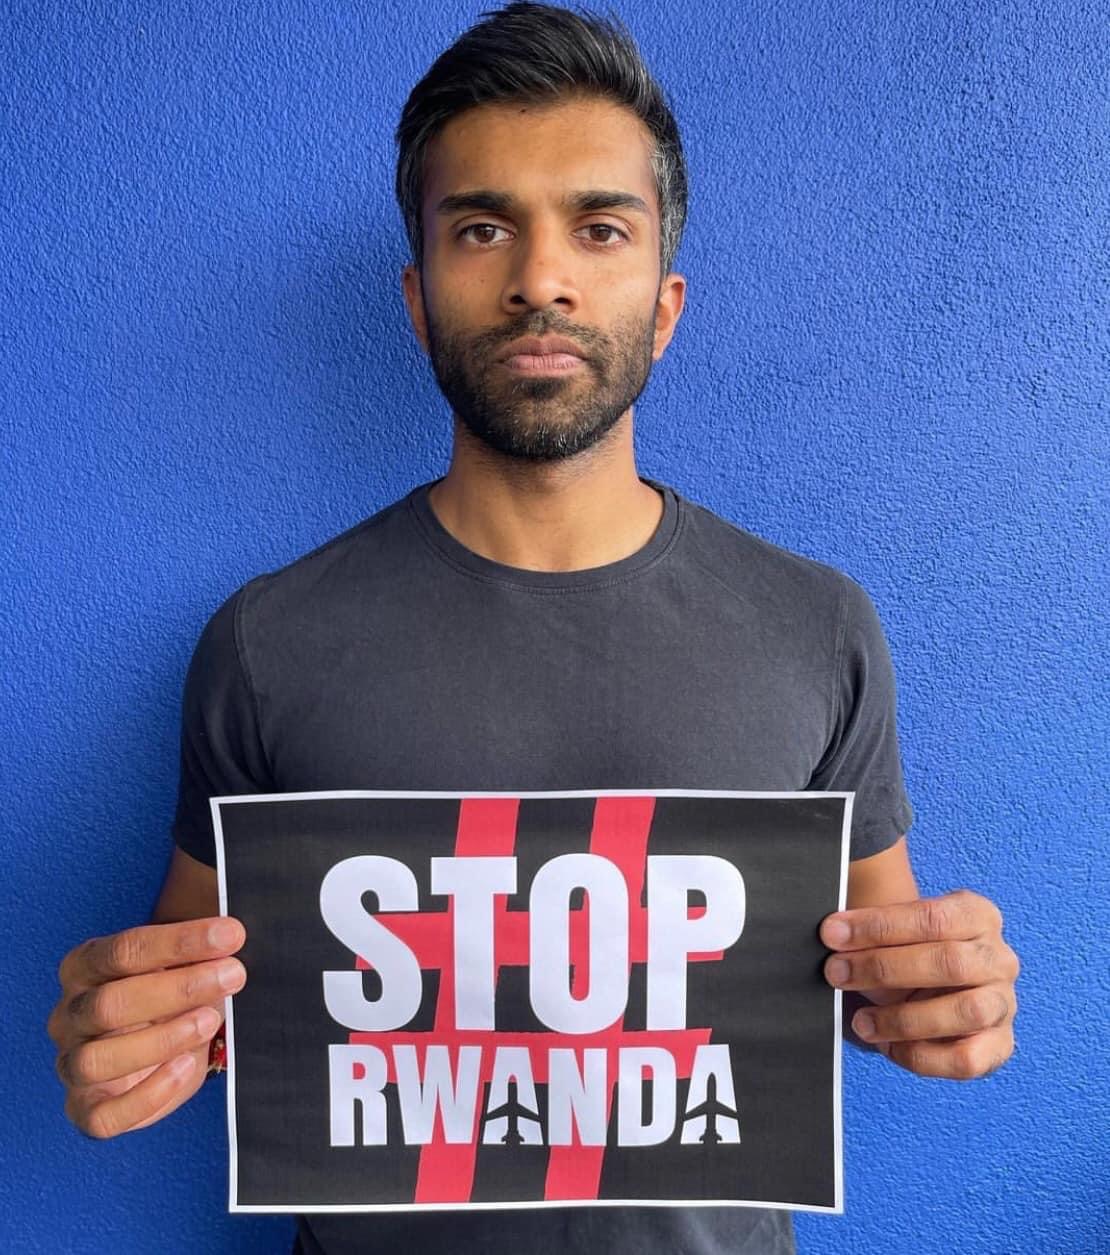 Nikesh says #StopRwabda